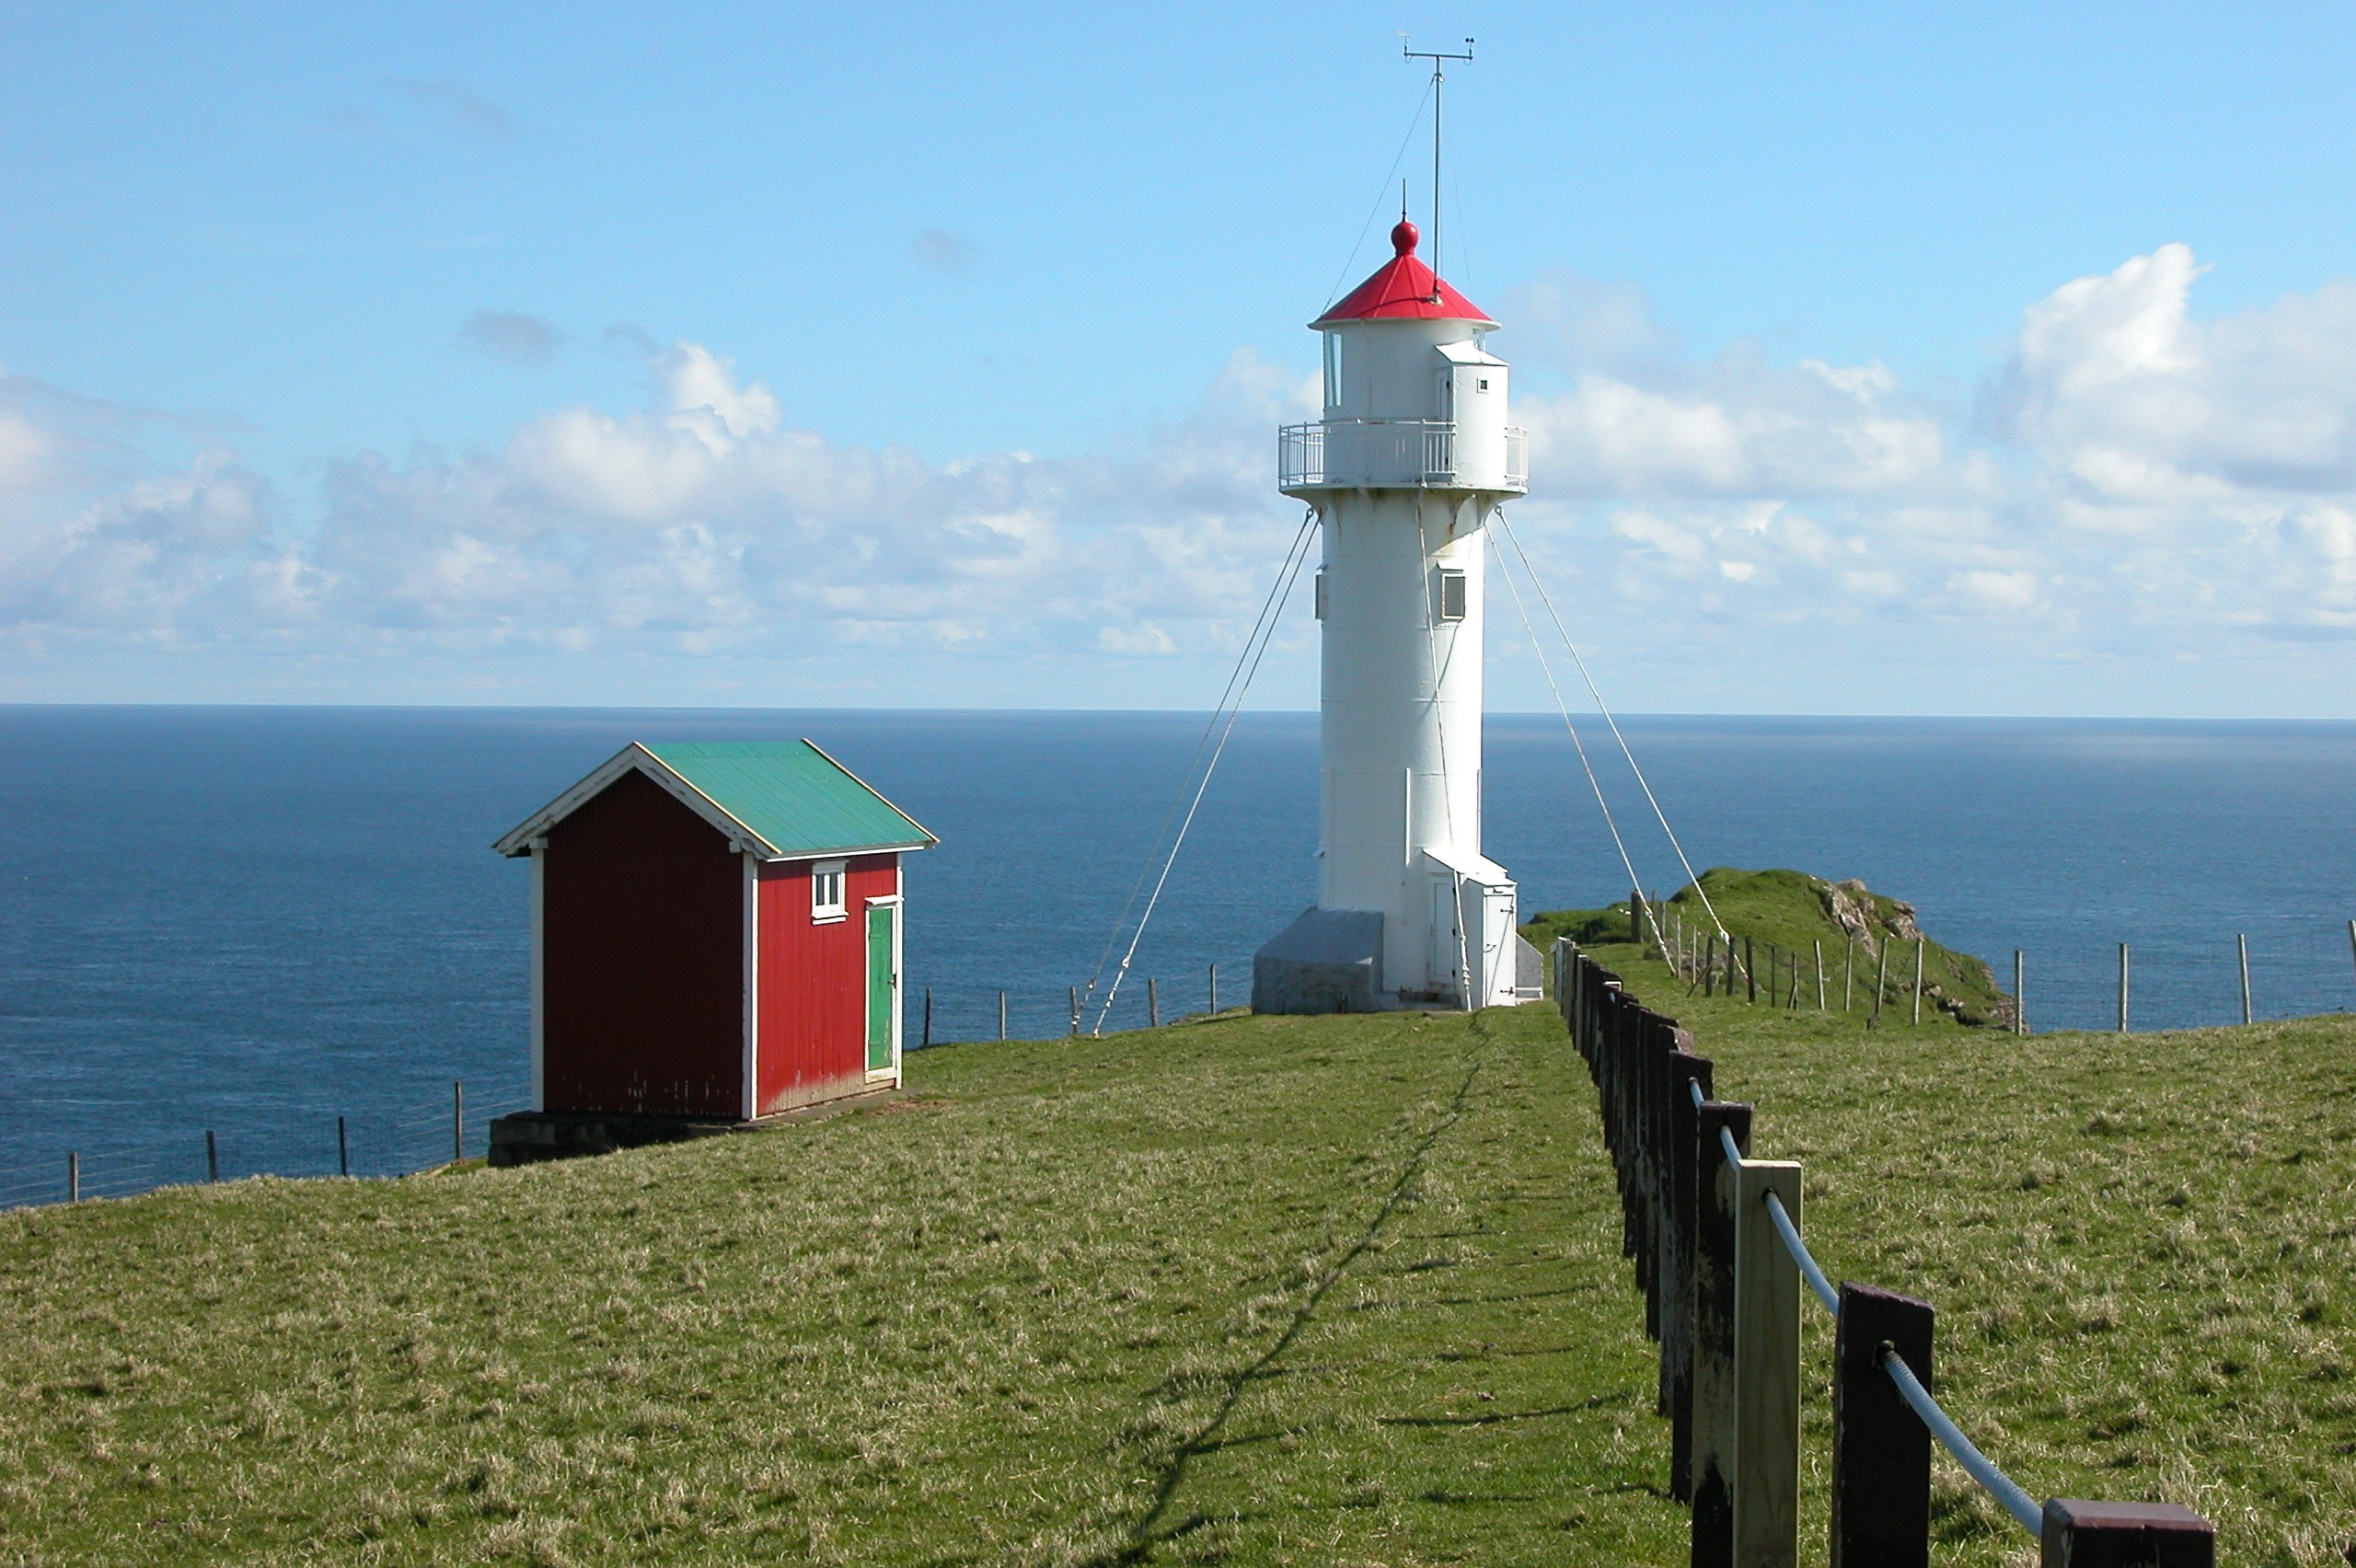 Akraberg lighthouse
Author of the photo: [url=http://www.jenskjeld.info/]Marita Gulklett[/url]

Keywords: Faroe Islands;Atlantic ocean